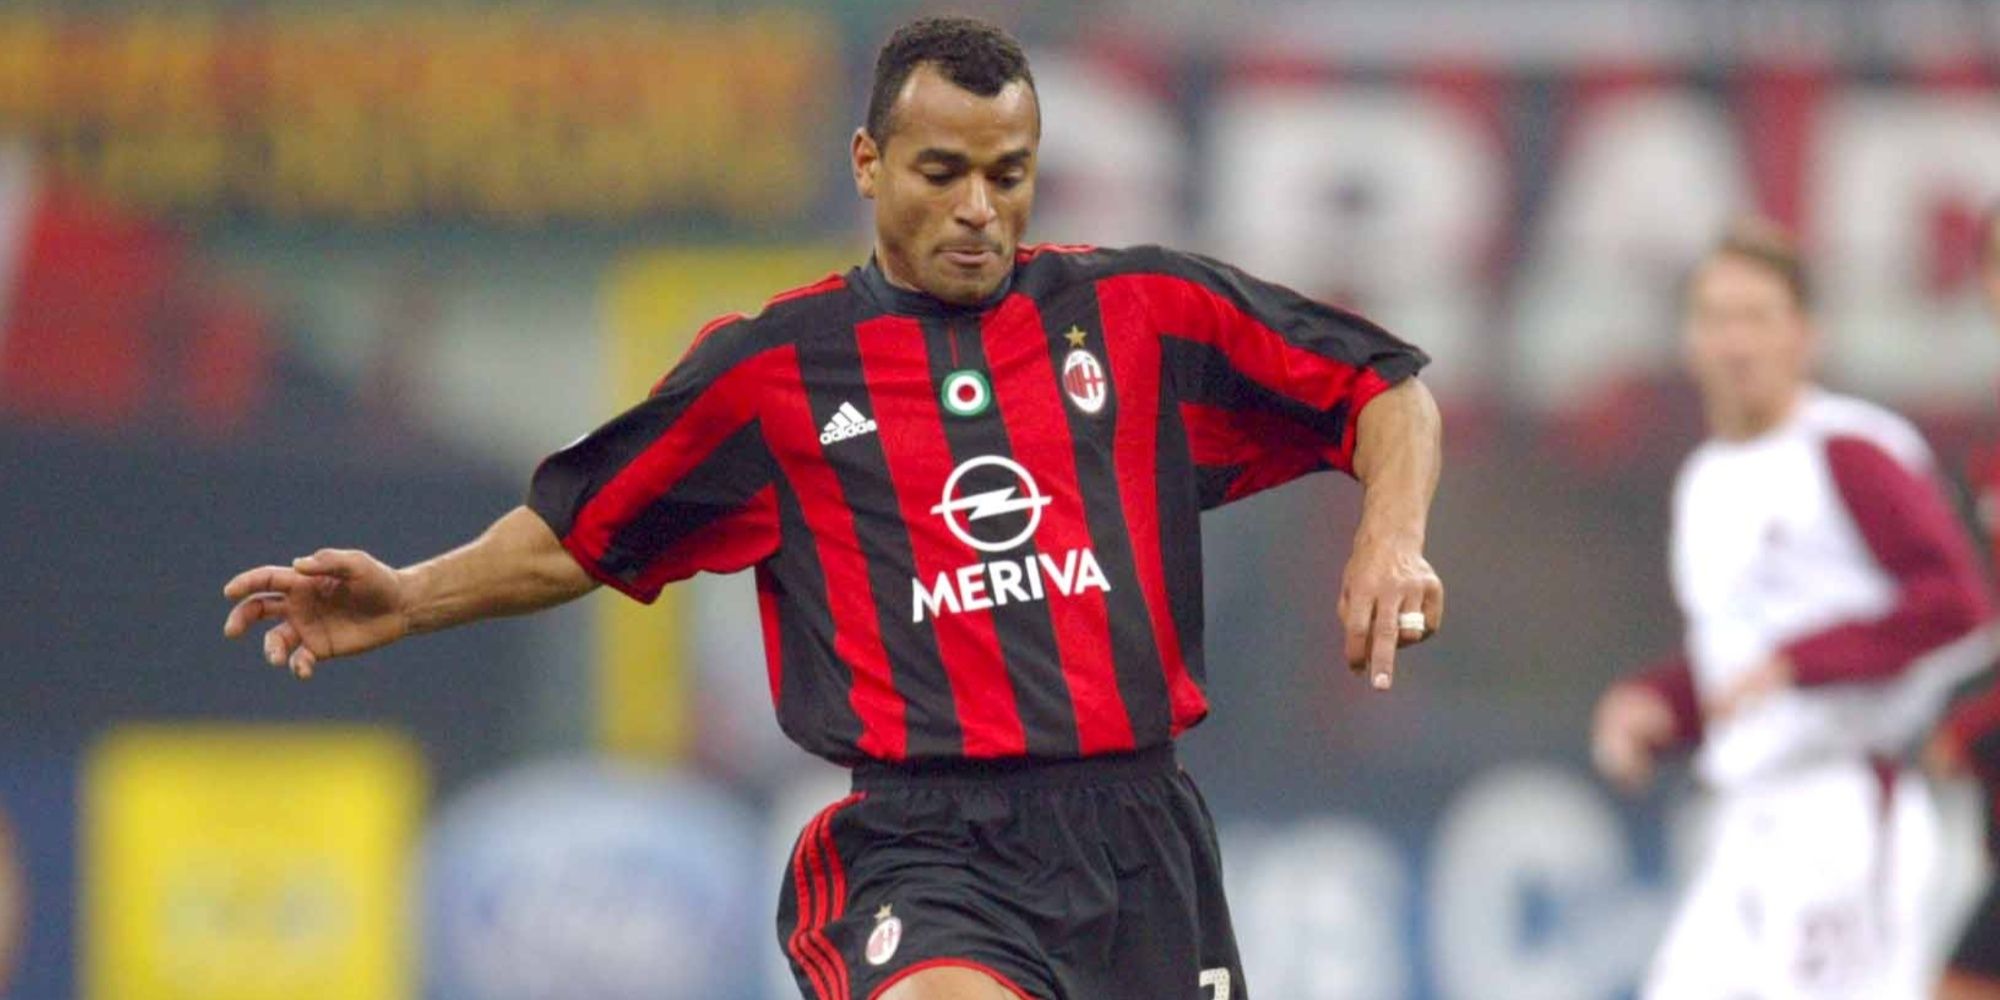 Cafu playing for AC Milan